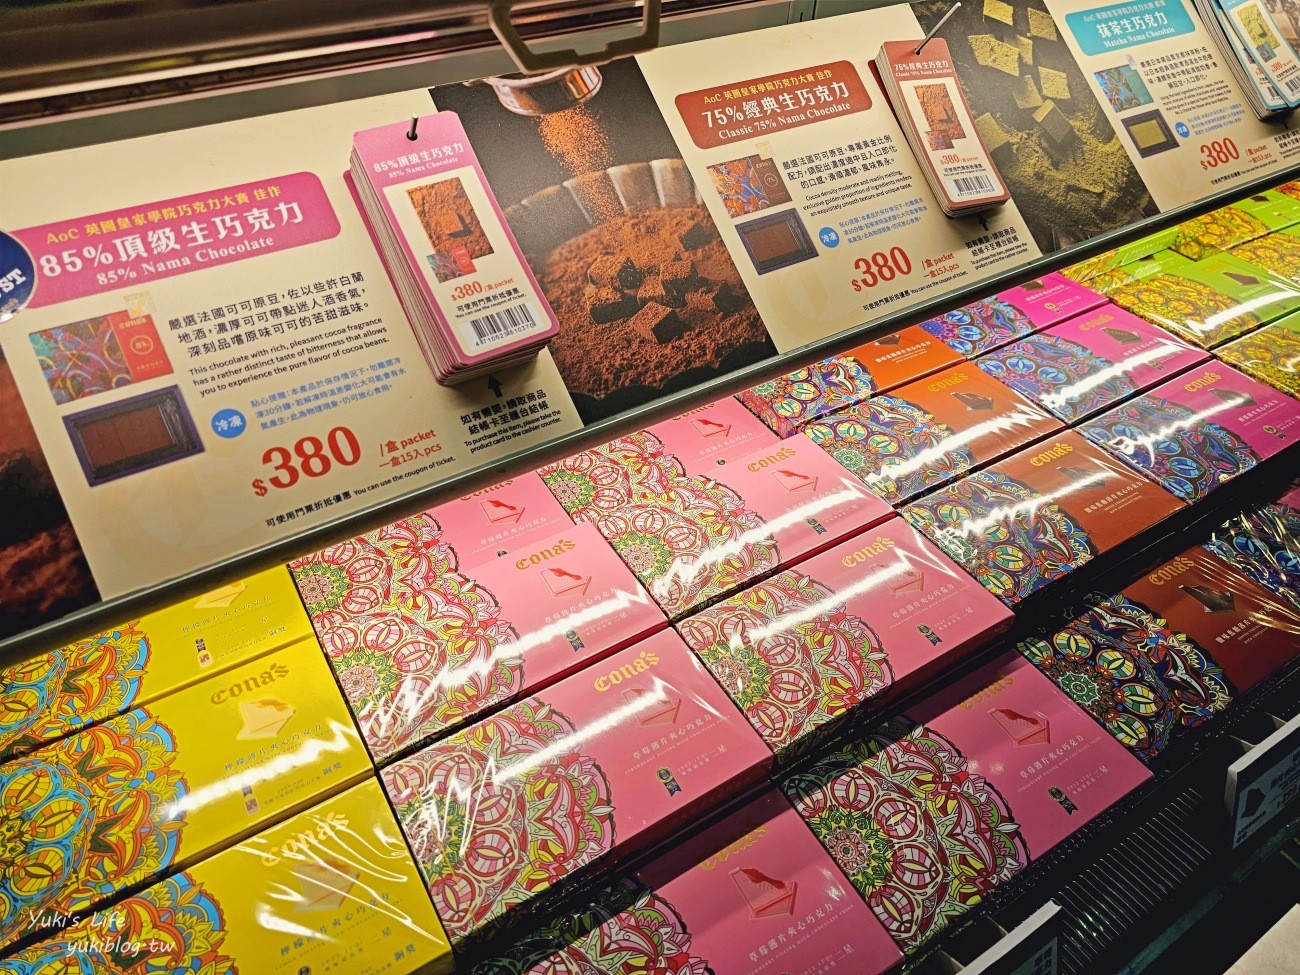 Cona's妮娜巧克力夢想城堡，南投埔里巧克力觀光工廠門票&介紹 - yukiblog.tw